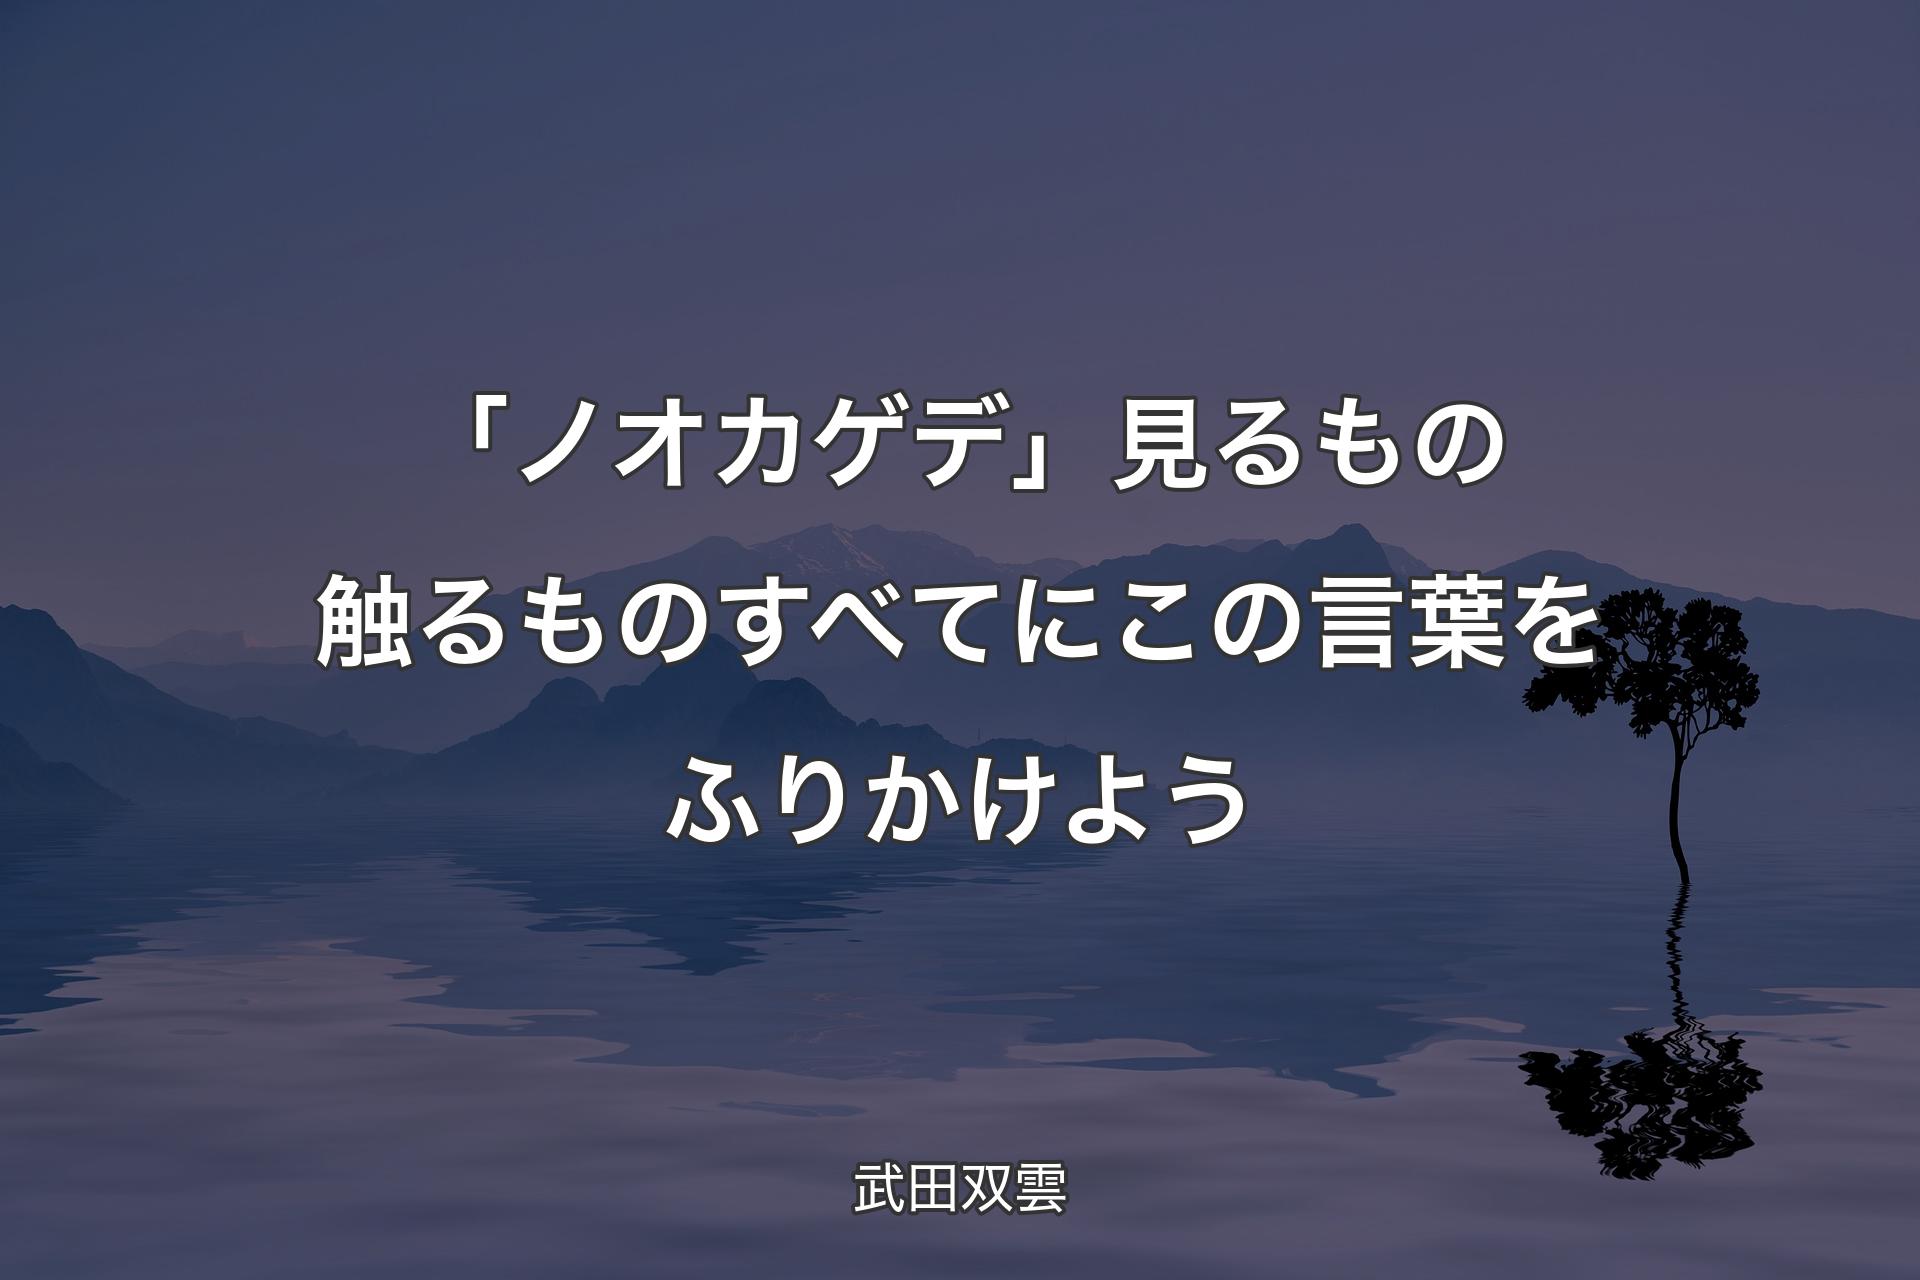 【背景4】「ノ��オカゲデ」見るもの触るものすべてにこの言葉をふりかけよう - 武田双雲